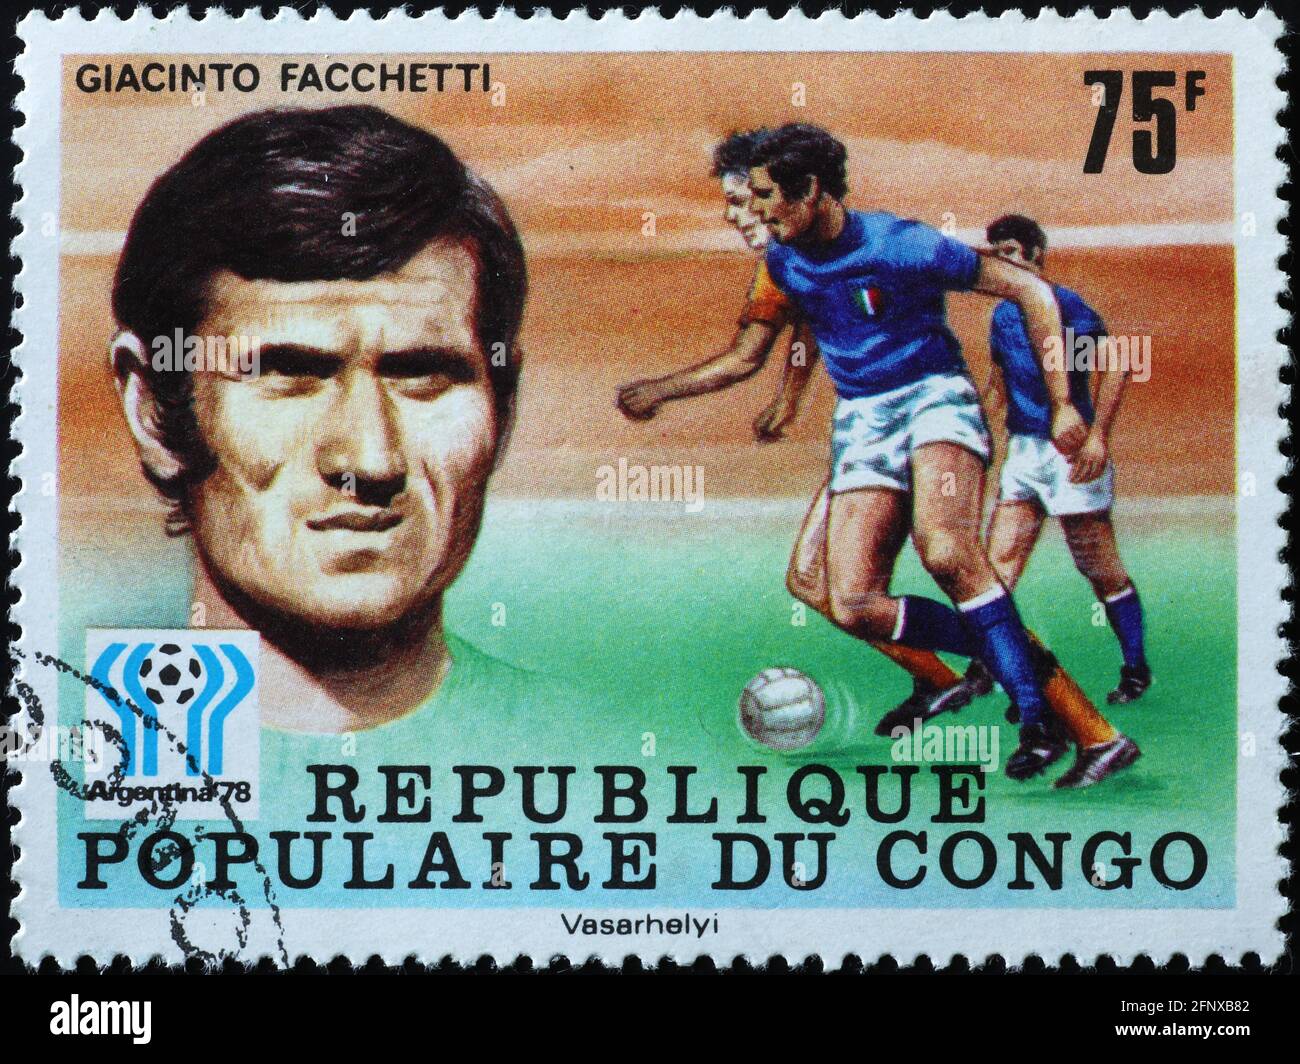 Italian footballer Giacinto Facchetti on postage stamp Stock Photo